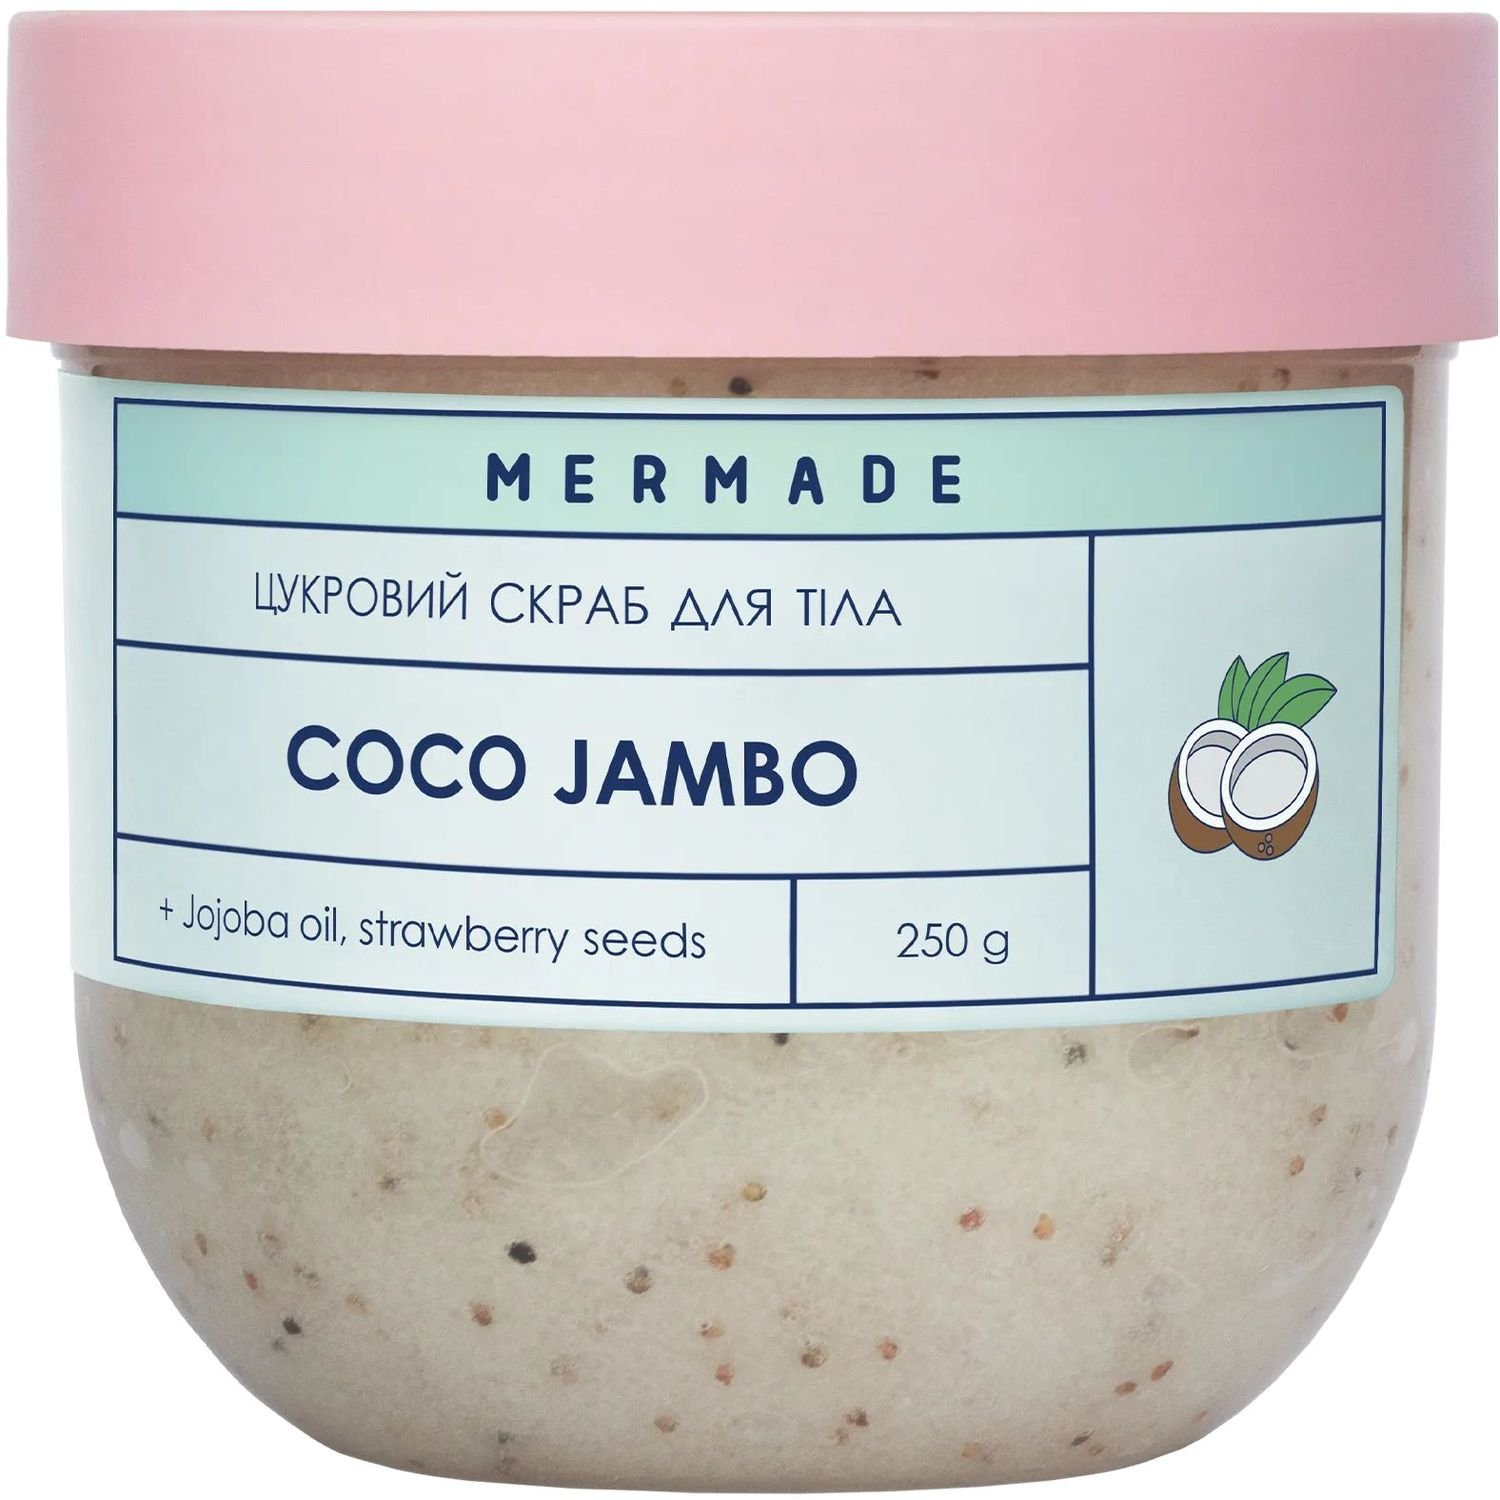 Сахарный скраб для тела Mermade Coco Jambo 250 г - фото 1